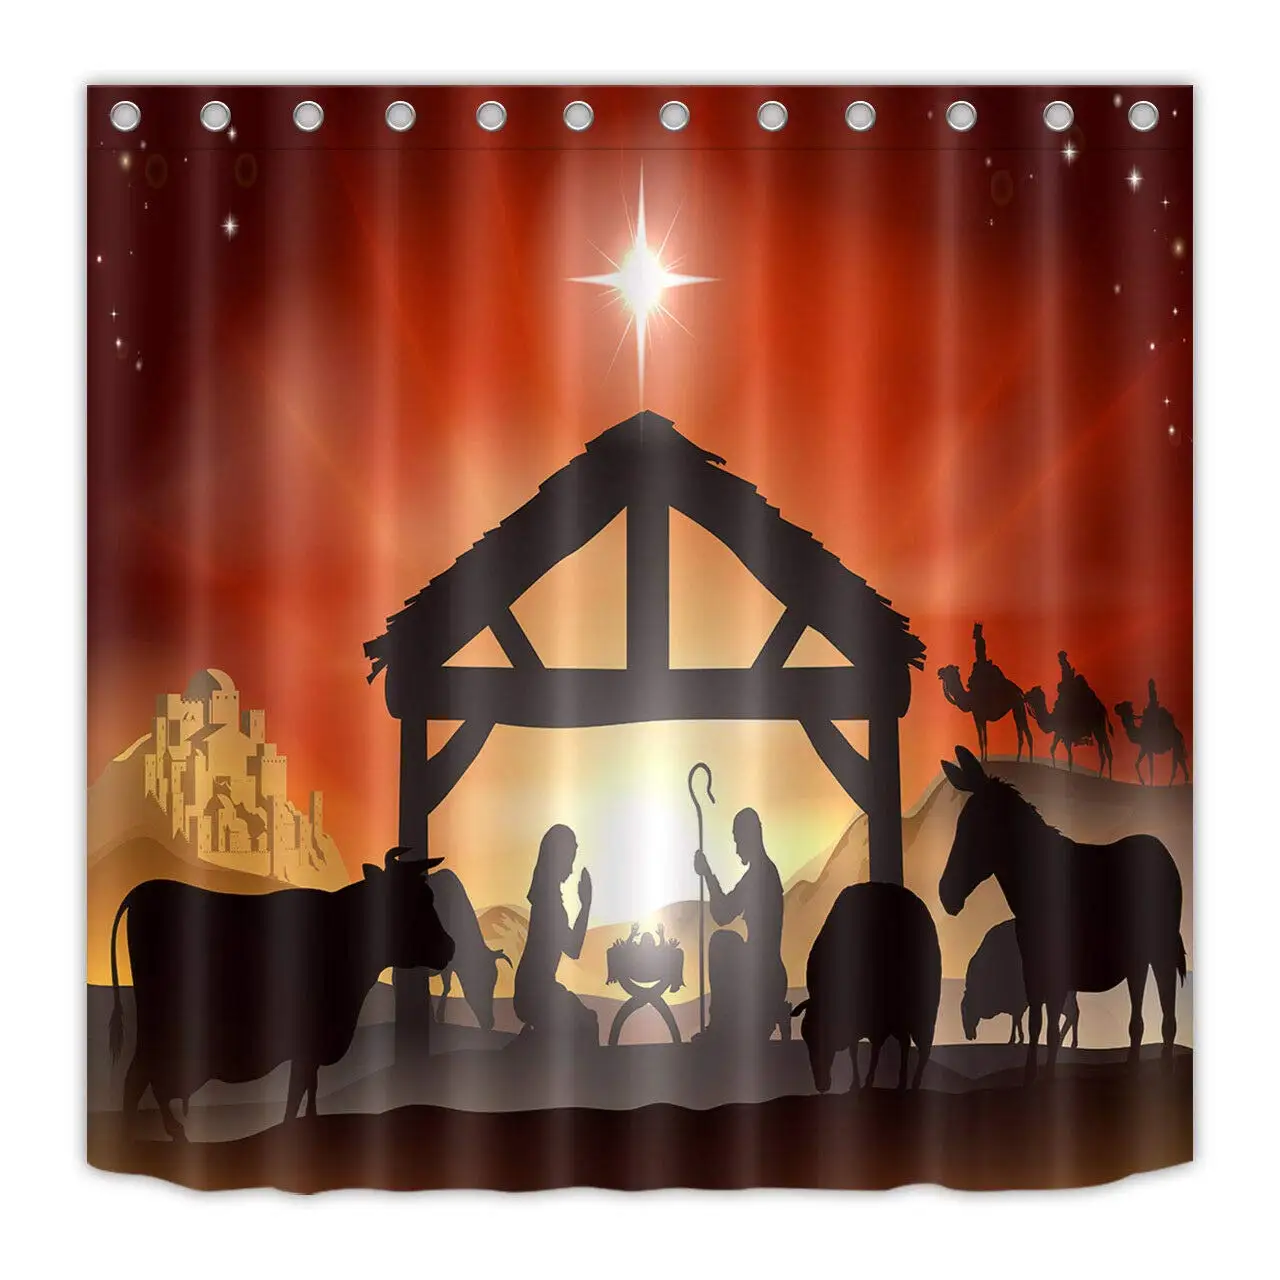 

Водонепроницаемая занавеска для душа в ванную комнату, 3D рисунок «Три короля» с изображением Рождества Иисуса, не выцветает 12